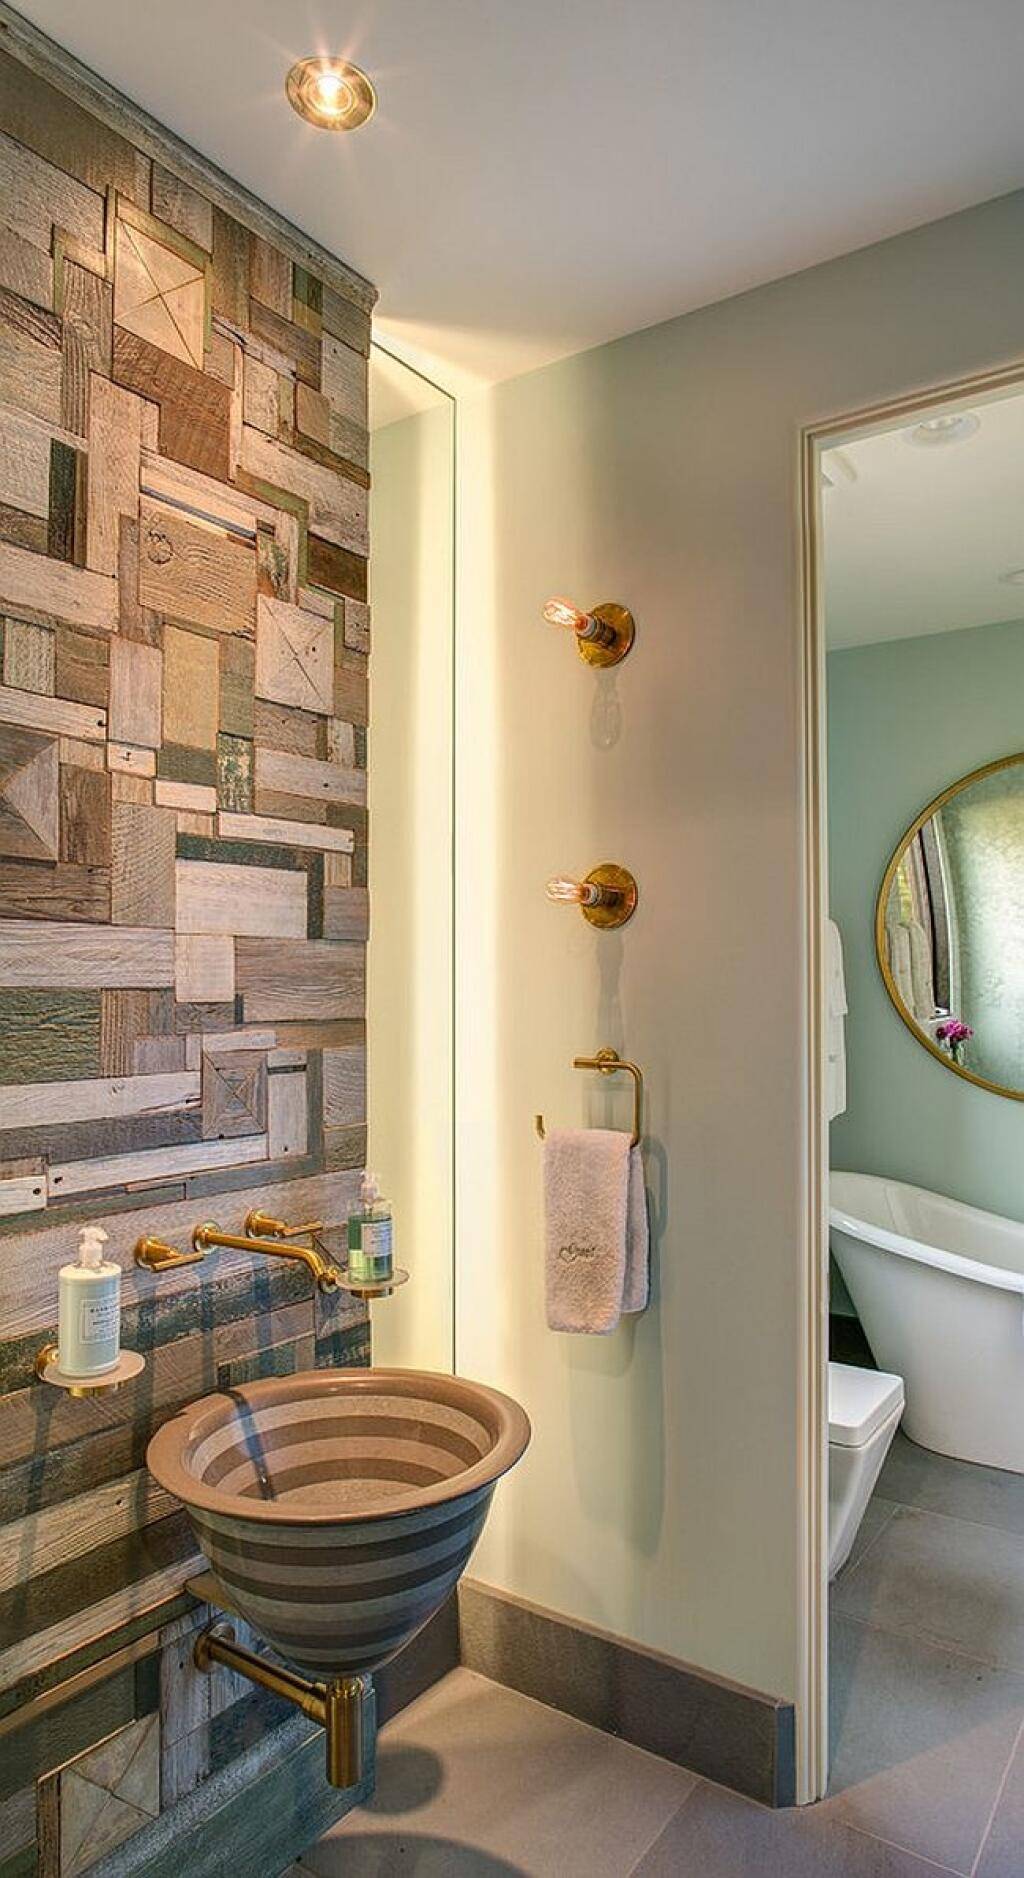 Альтернатива плитке в ванной комнате - виды пластиковых пвх панелей и других способов отделки